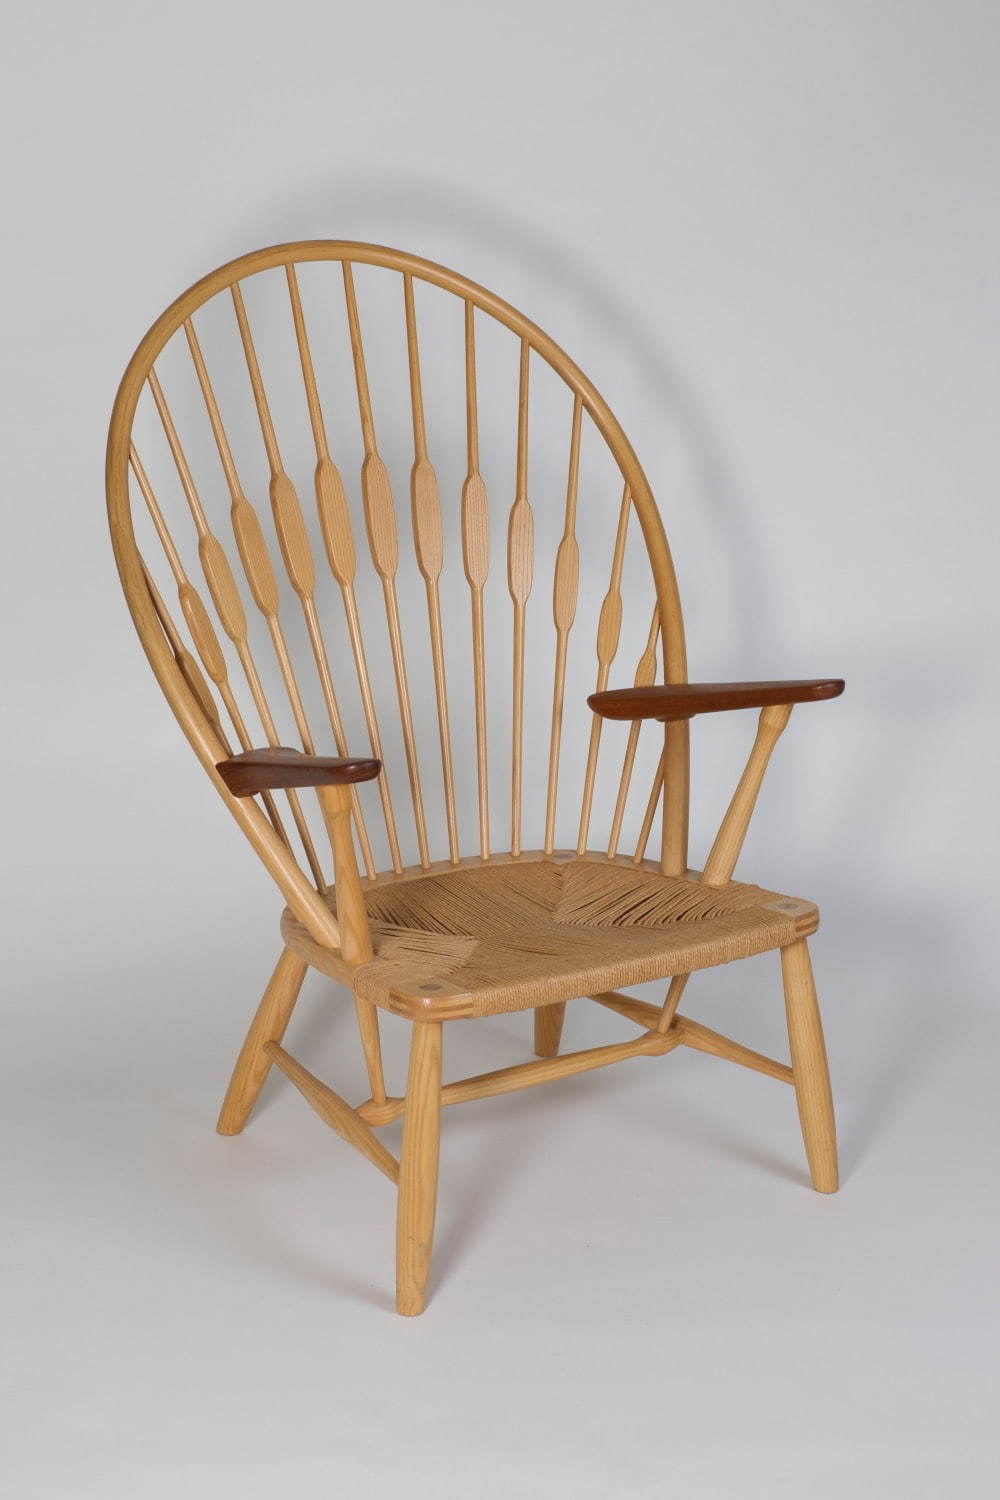 ハンス・ヴィーイナ(ウェグナー) 椅子 JH550「ピーコックチェア」1947年 ヨハネス・ハンスン 個人蔵
photo: Michael Whiteway